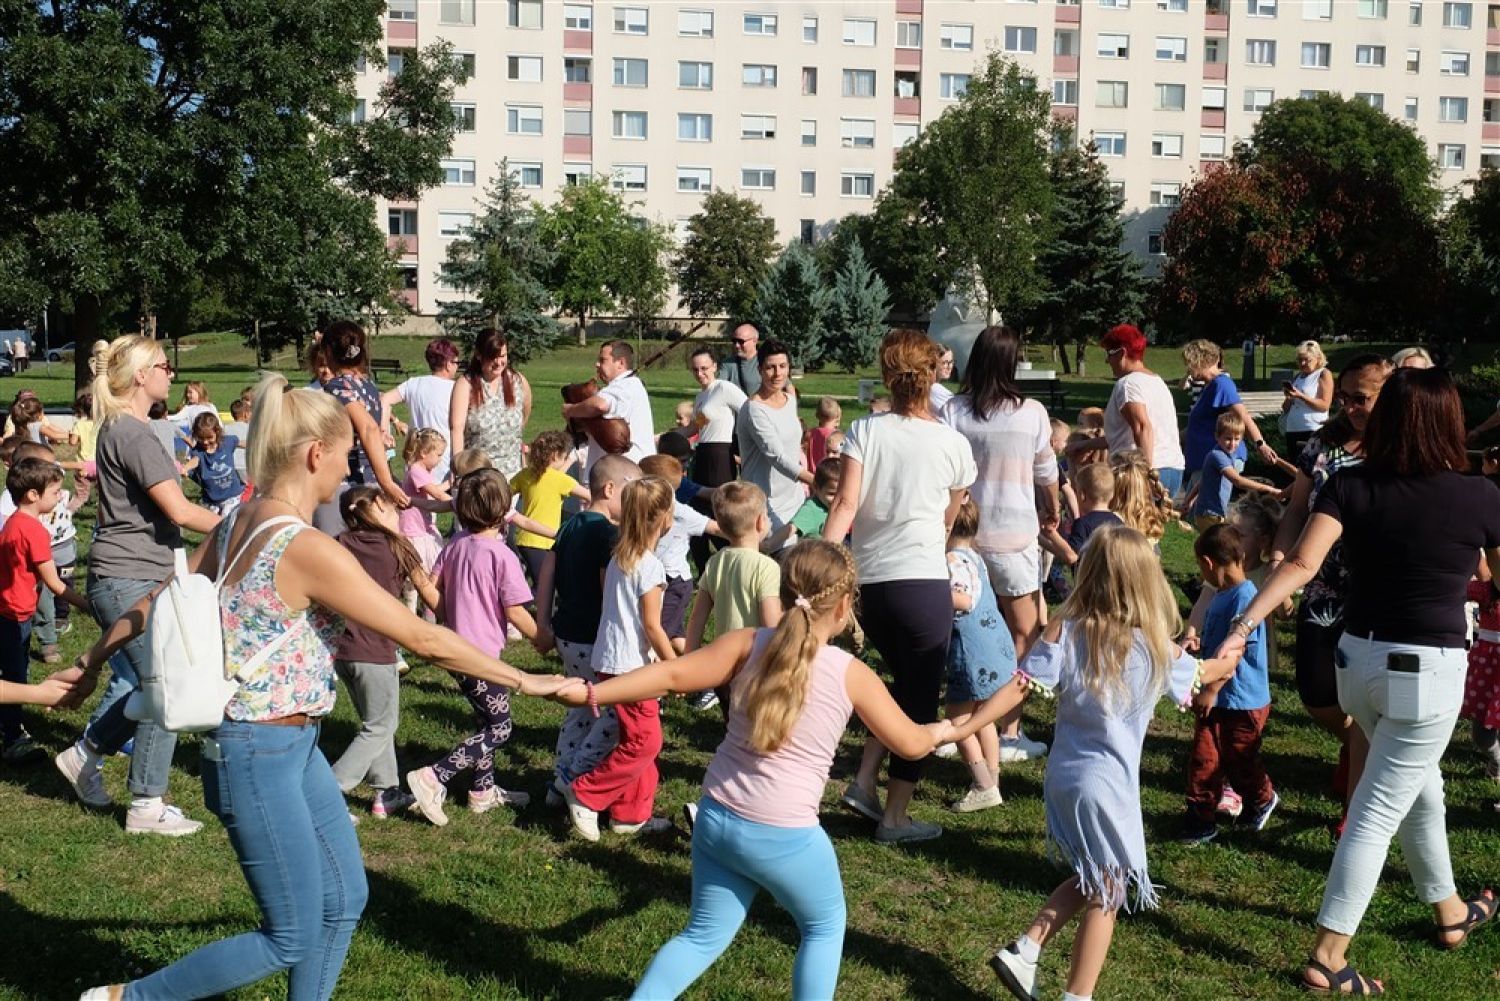 Es la Semana de la Salud en el jardín de infancia de Felsővárosi: el tema es la Cosecha y las Uvas